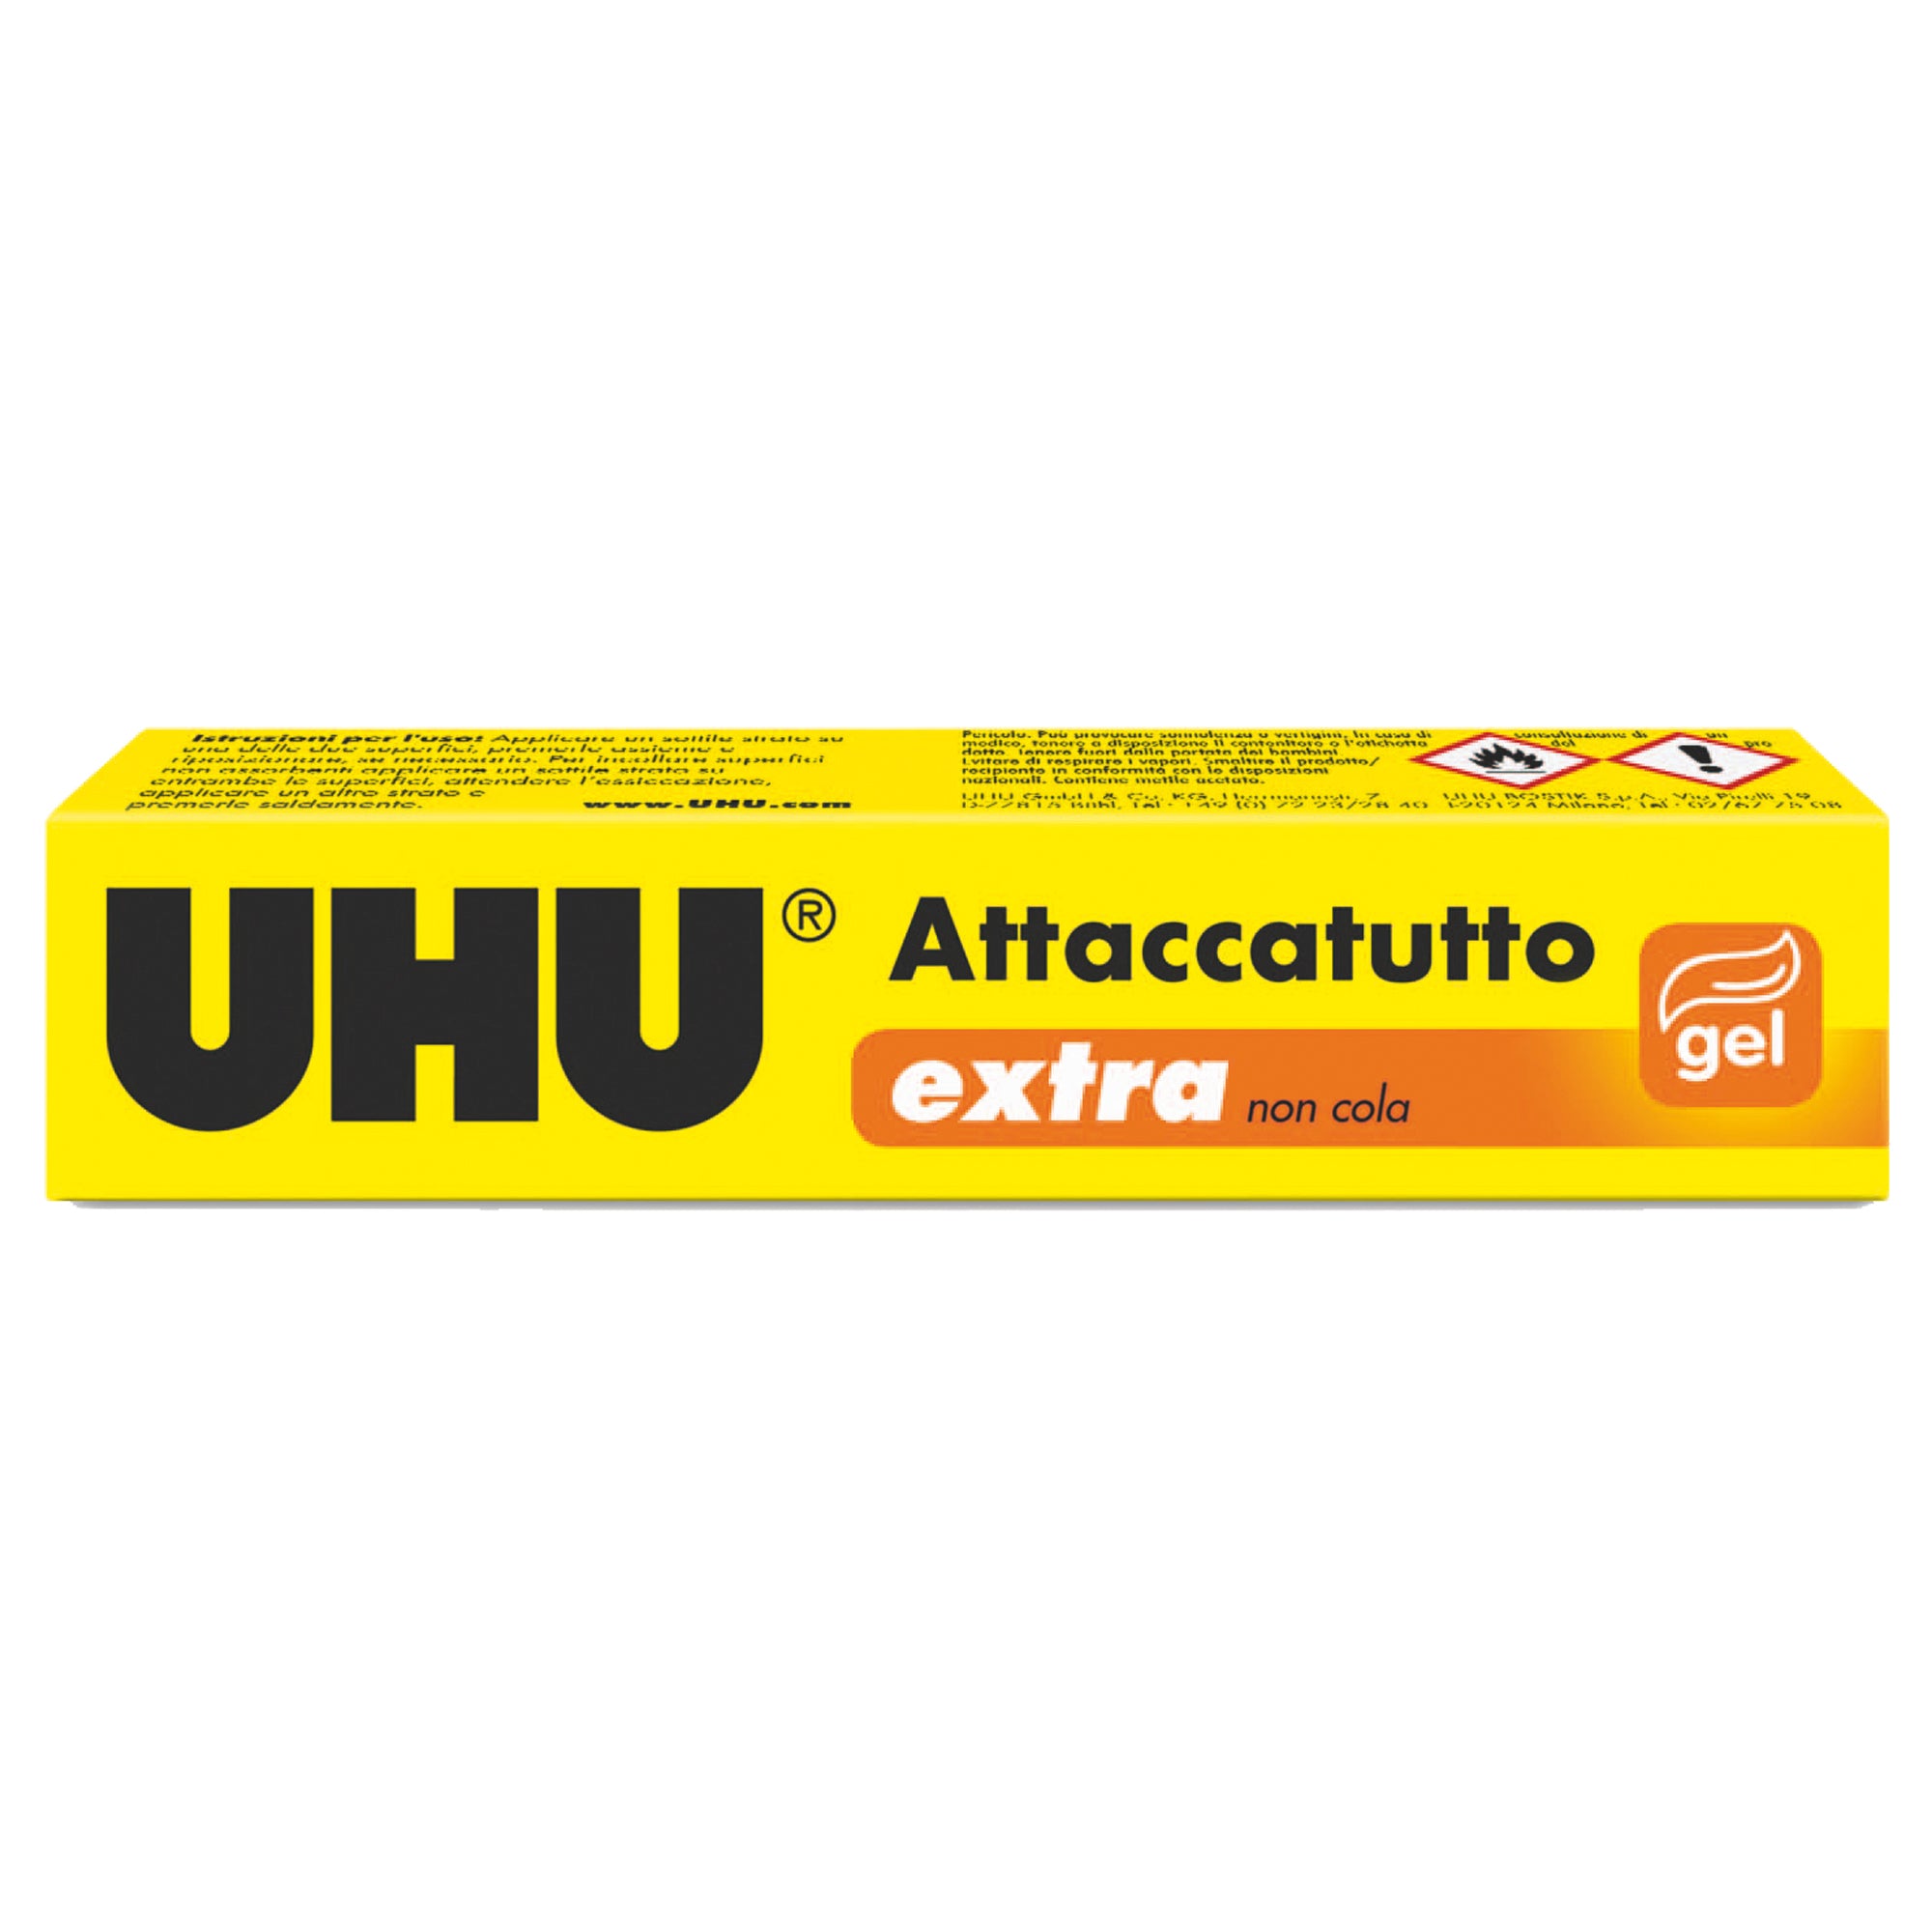 uhu-colla-extra-attaccatutto-31ml